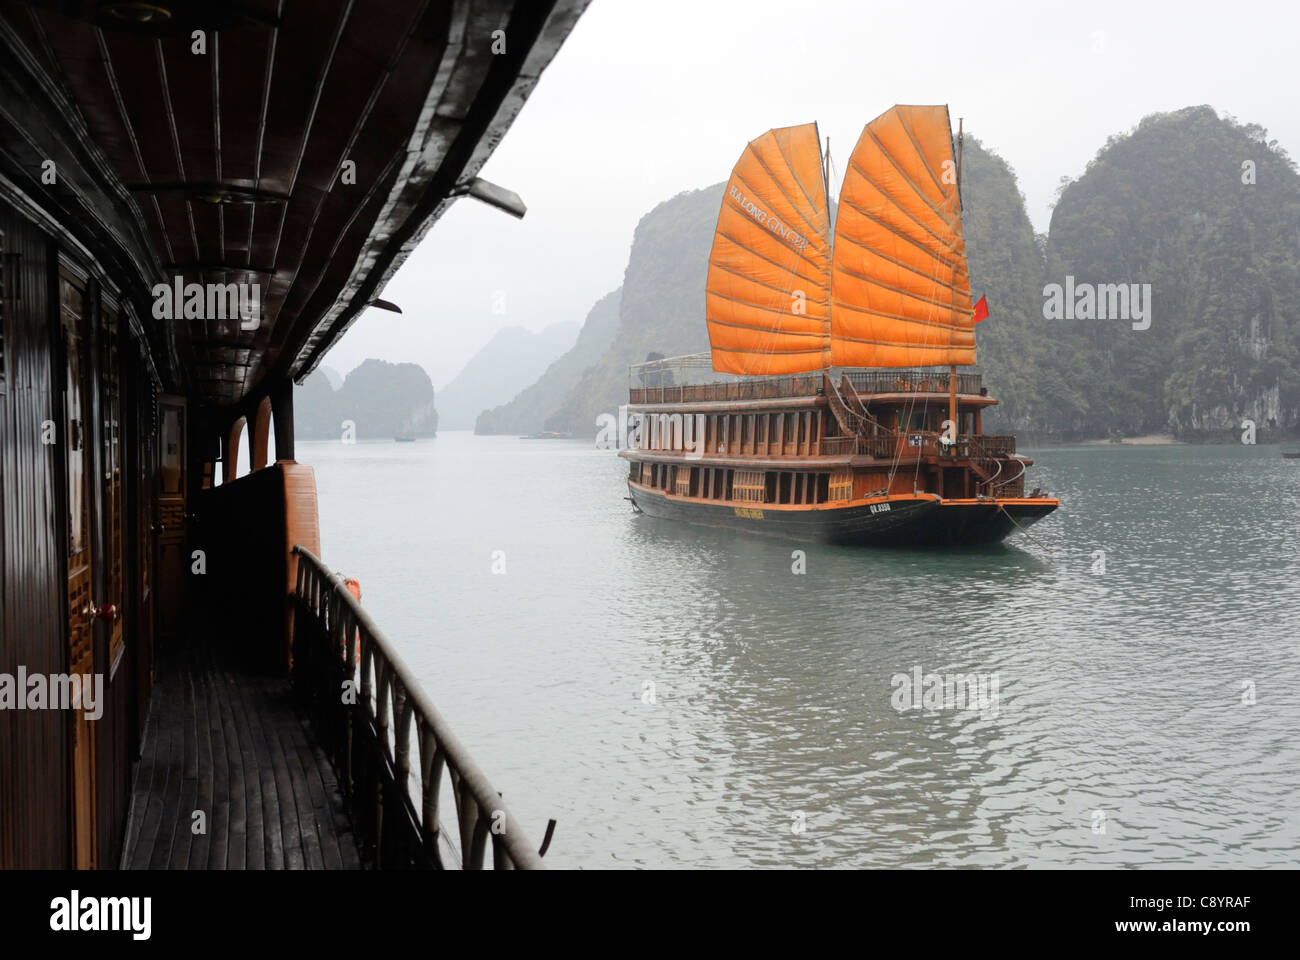 Asien, Vietnam, Halong-Bucht. Traditionelles Segeln Trödel auf die Halong-Bucht. Bezeichnet ein UNESCO-Weltkulturerbe im Jahr 1994, der s... Stockfoto